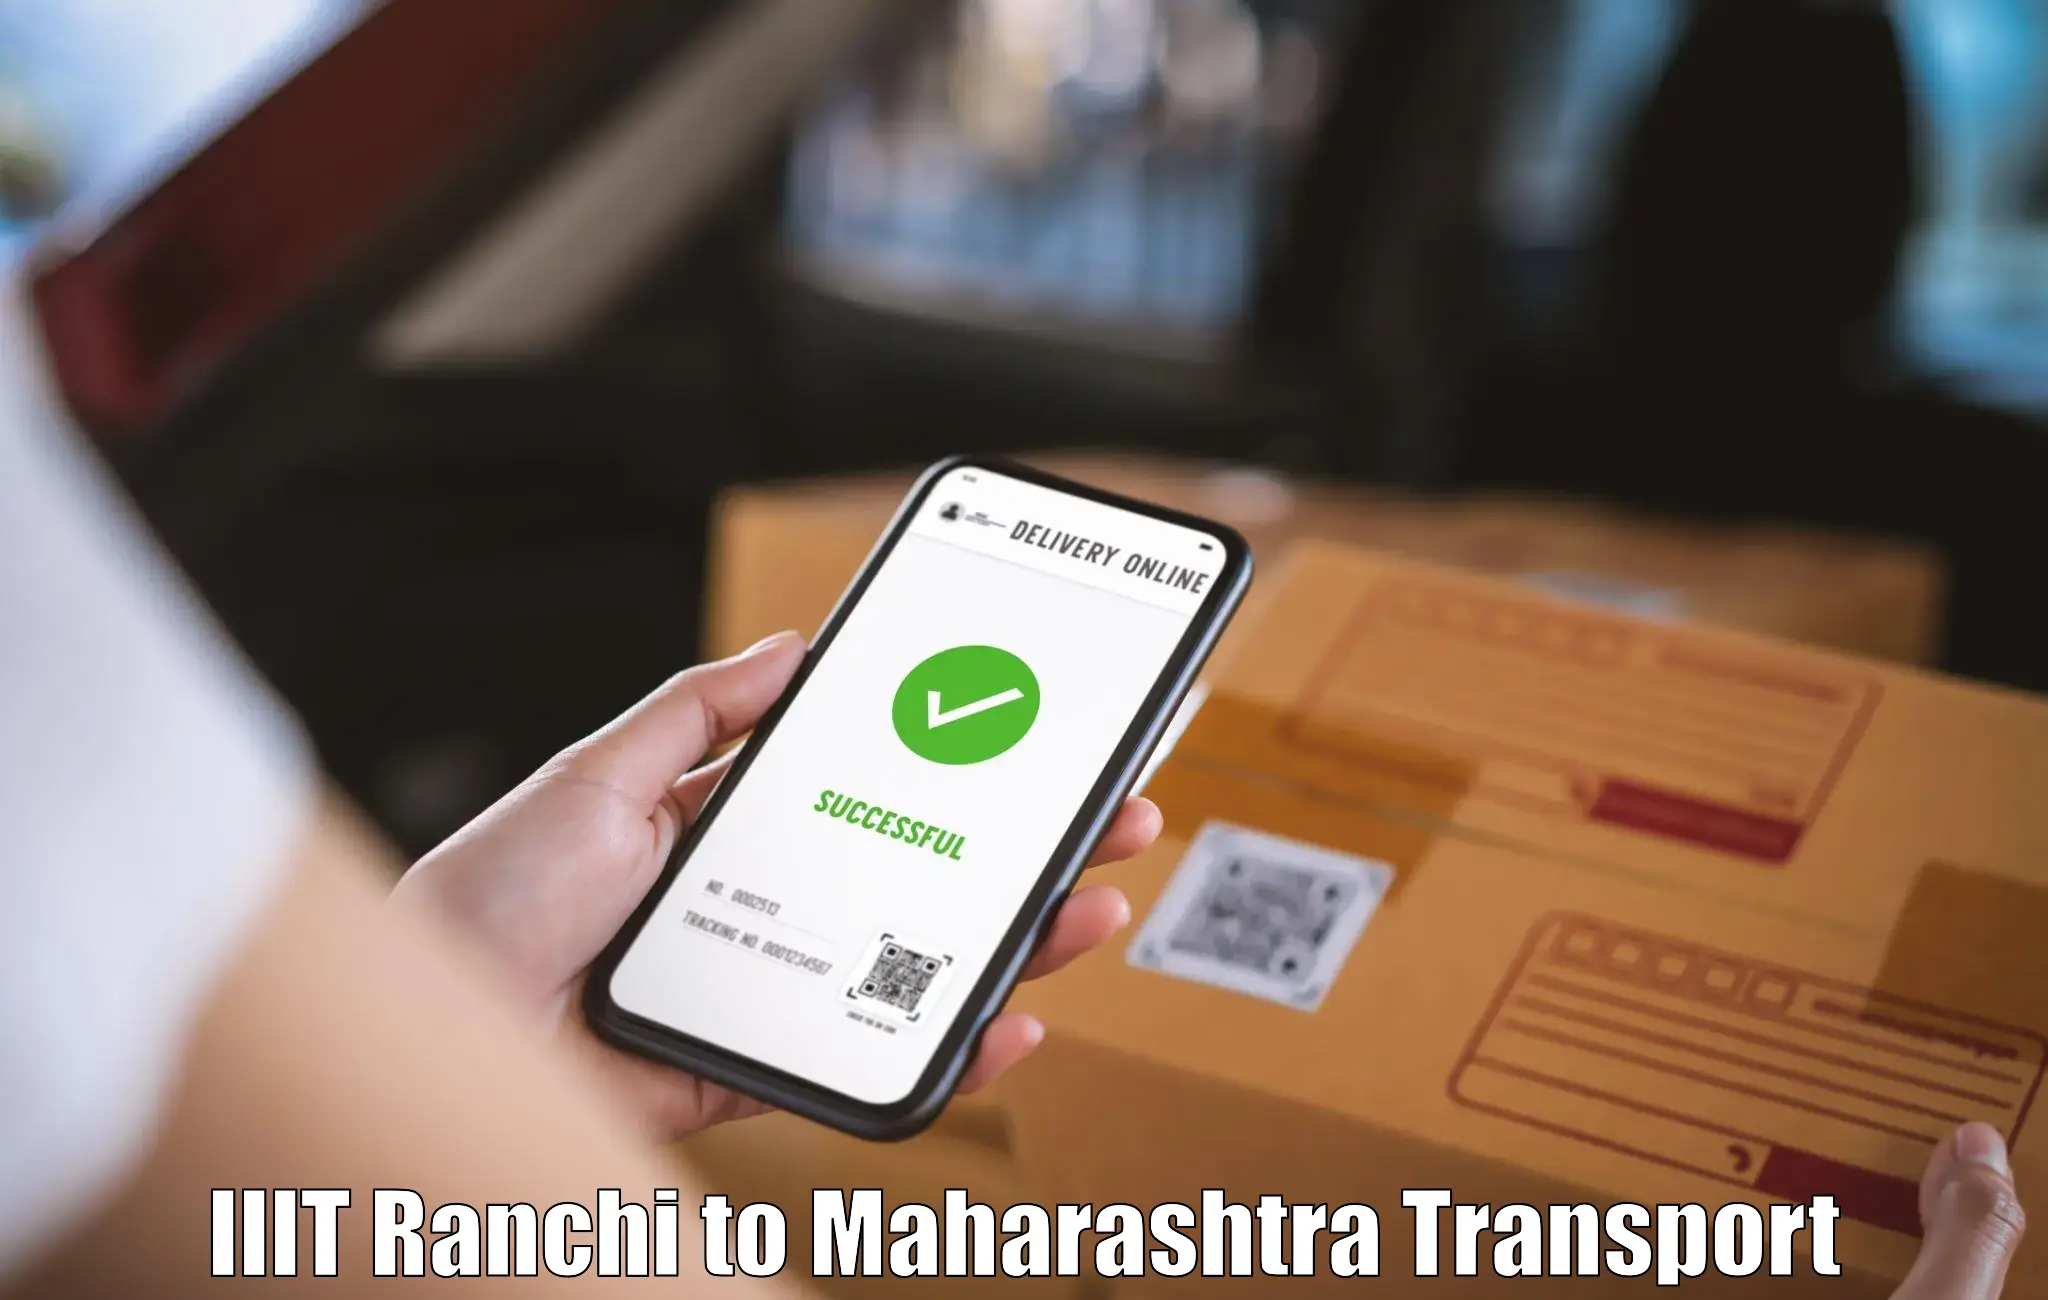 Nearby transport service IIIT Ranchi to IIT Mumbai